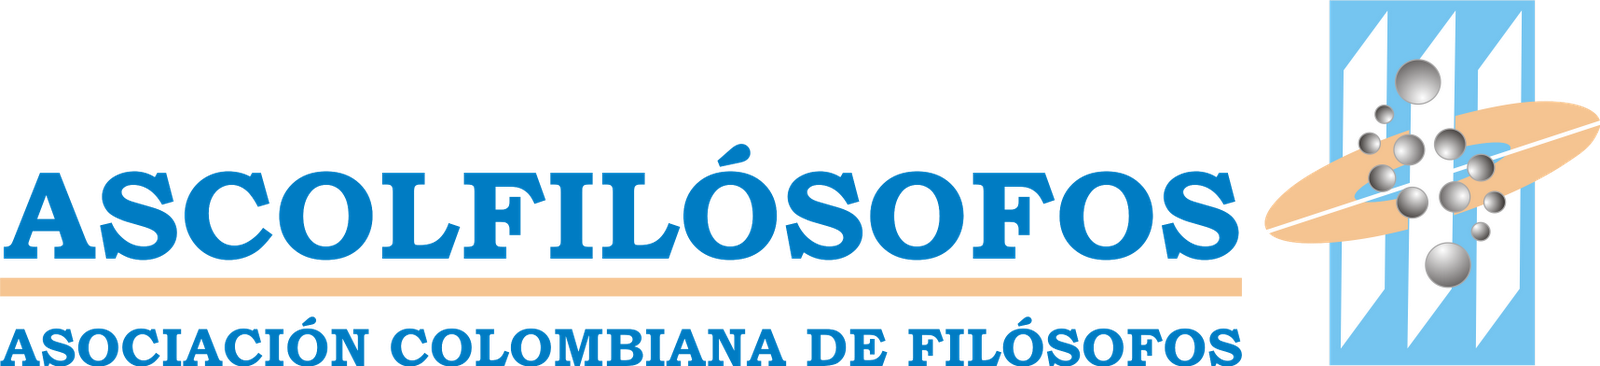 ASOCIACIÓN COLOMBIANA DE FILÓSOFOS